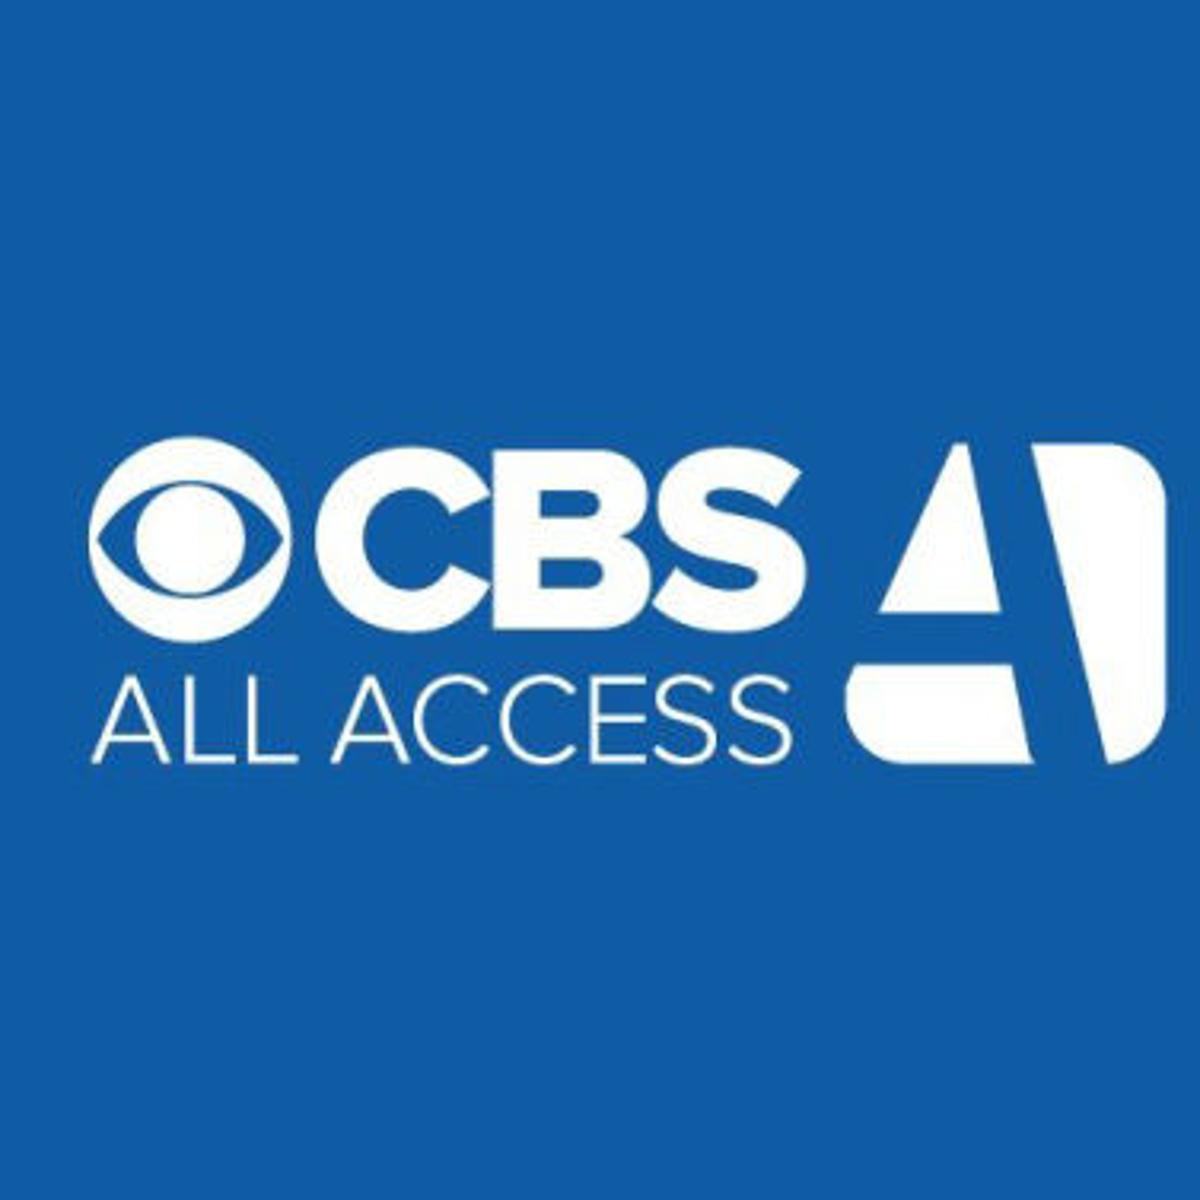 Logo for cashback partner (CBS All Access)